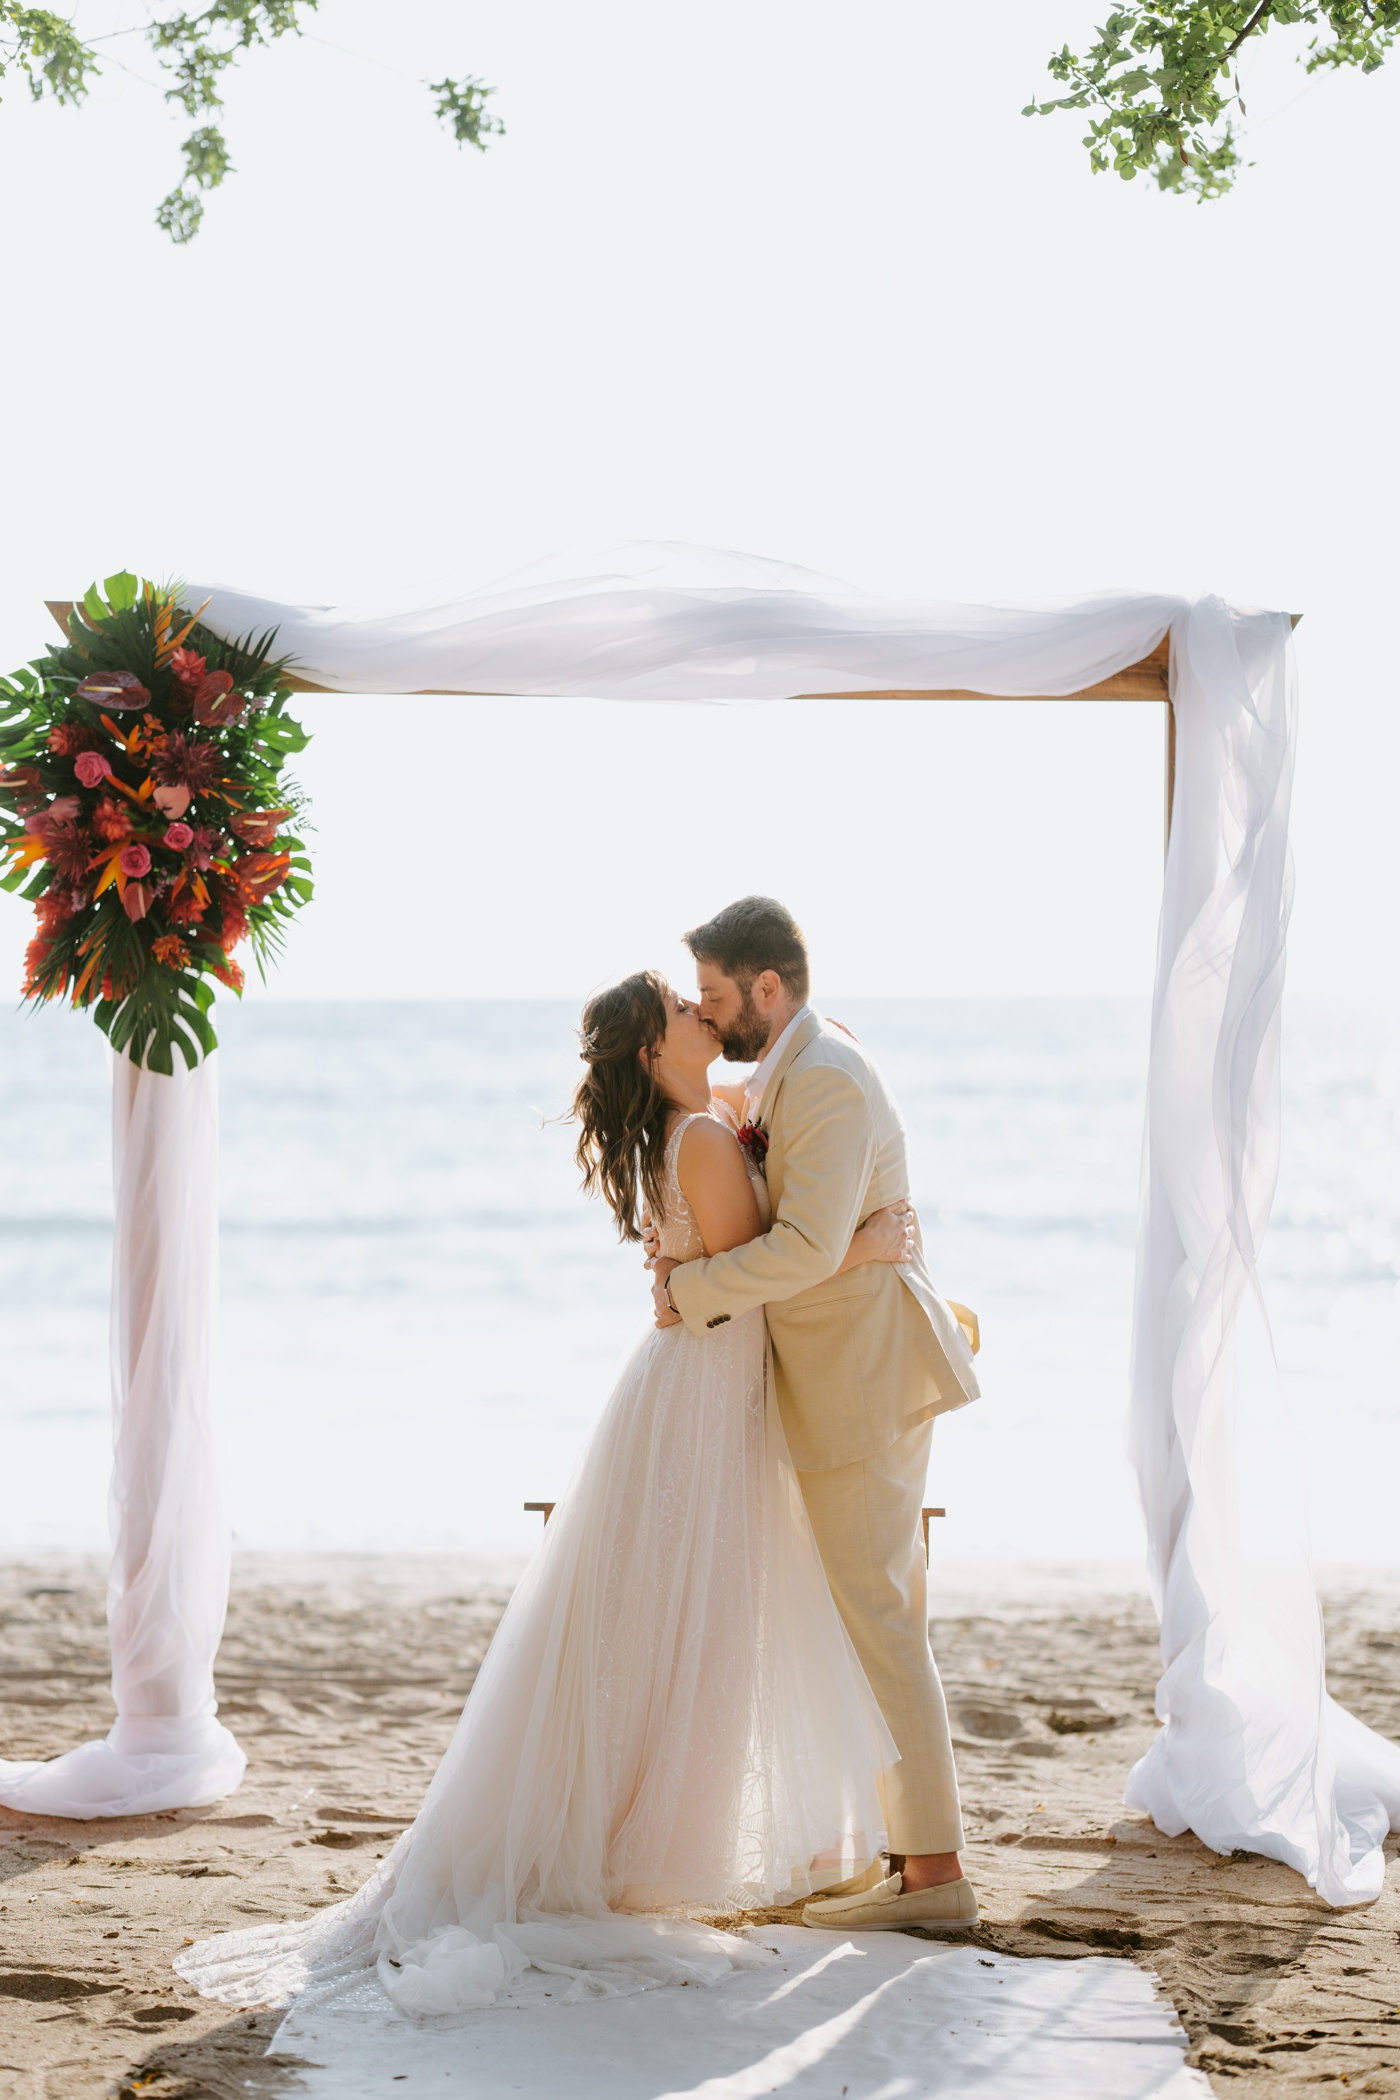 Outdoor wedding ceremony on Arboleda Beach at Dreams Las Mareas